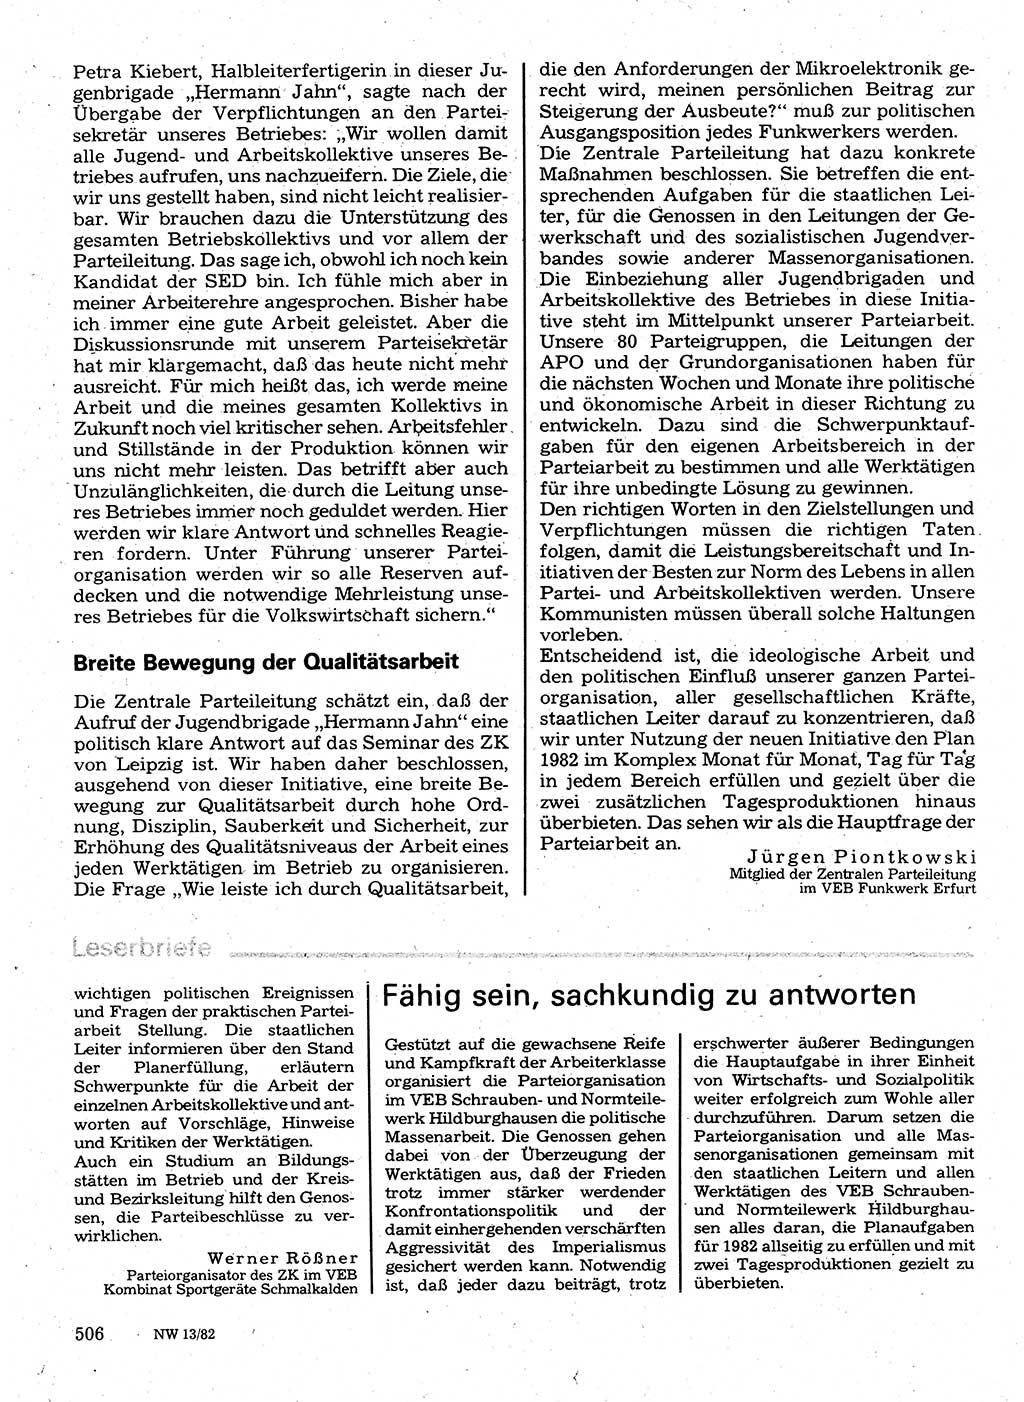 Neuer Weg (NW), Organ des Zentralkomitees (ZK) der SED (Sozialistische Einheitspartei Deutschlands) für Fragen des Parteilebens, 37. Jahrgang [Deutsche Demokratische Republik (DDR)] 1982, Seite 506 (NW ZK SED DDR 1982, S. 506)